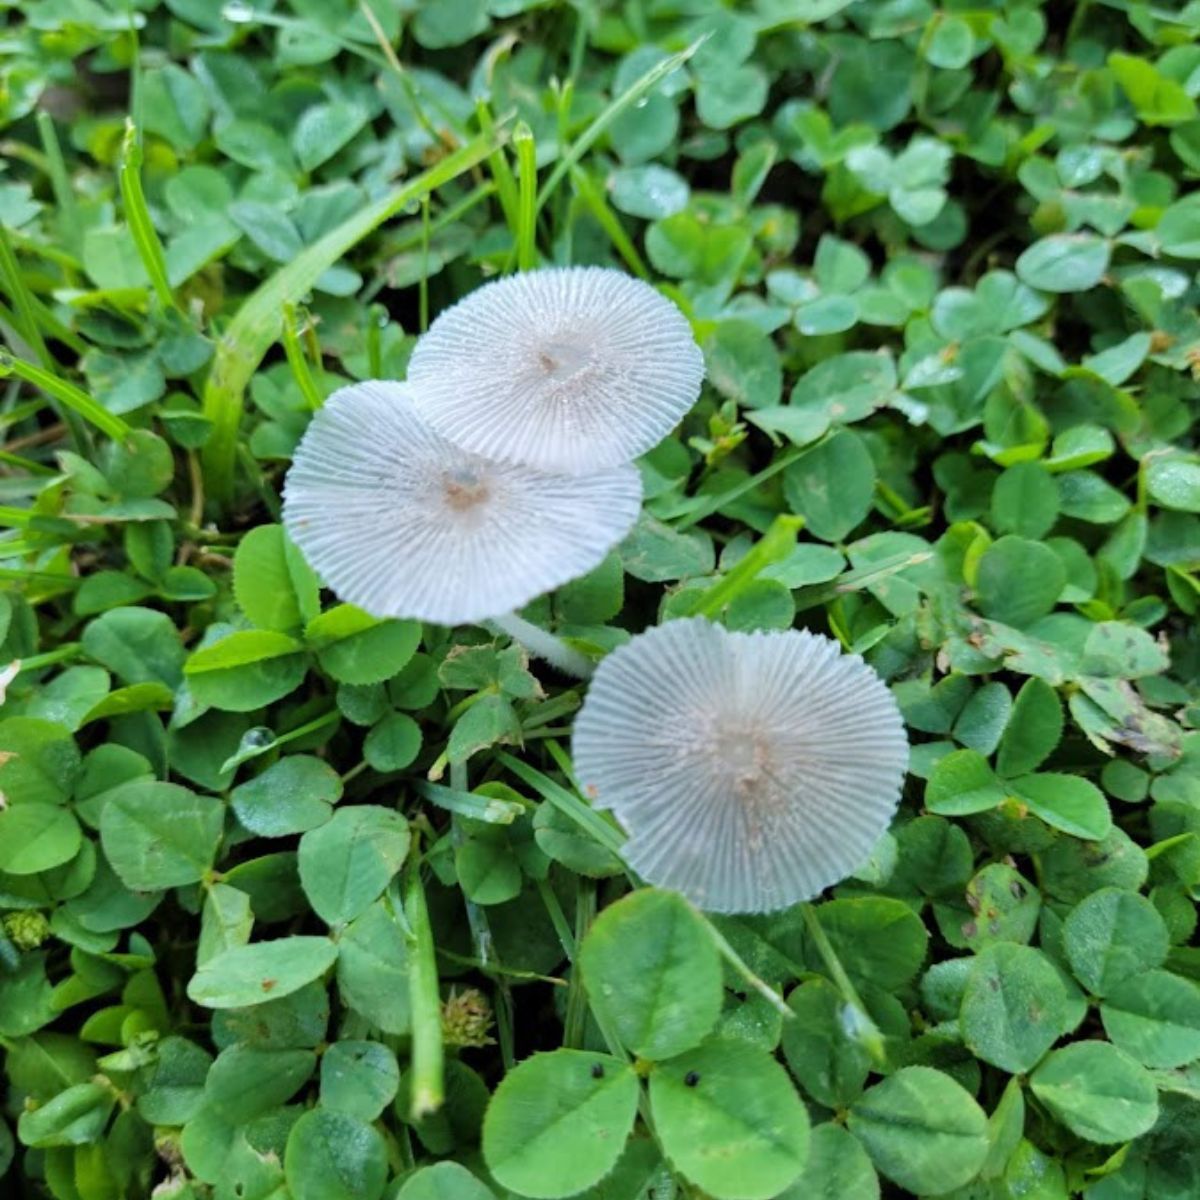 Japanese parasol mushrooms